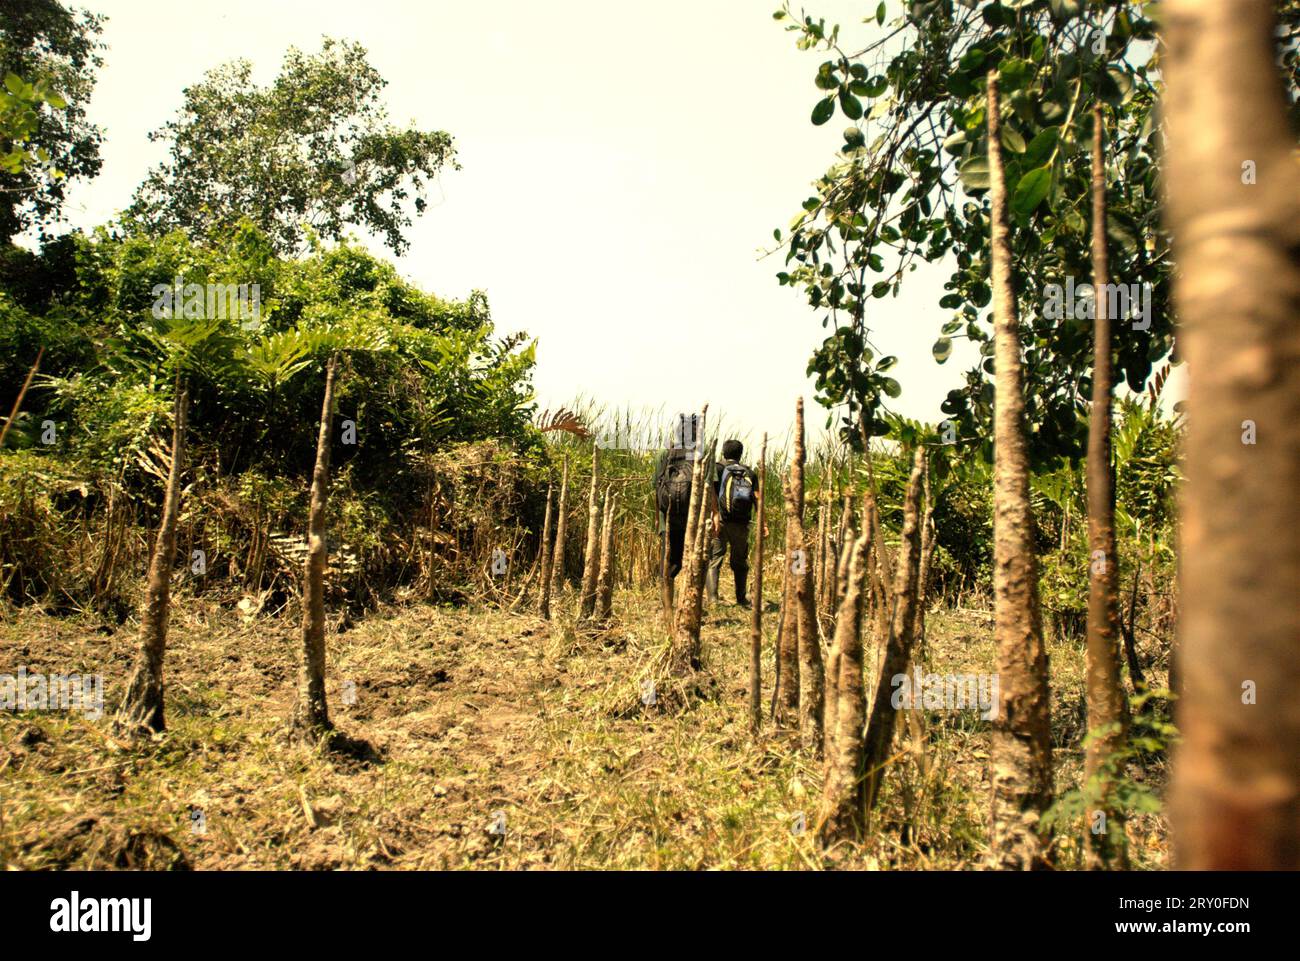 Gigantische Wurzeln der Sonneratia-Pflanze, einer der Mangrovenbäume, die in der Küstenlandschaft des Ujung Kulon-Nationalparks in Pandeglang, Banten, Indonesien, wachsen. Ein gut bewirtschafteter Nationalpark verfügt über eine kompetente und angemessene Strategie, um den Verlust der biologischen Vielfalt und den Klimawandel zu verhindern und die lokale Gesellschaft zu verbessern, während gleichzeitig das wesentliche Funktionieren des Ökosystems, von dem die Menschheit weltweit abhängig ist, erhalten bleibt, so Wissenschaftler. "Große Gebiete von Nationalparks wurden jedoch unter strengen Schutz gestellt, um die Artenvielfalt und die Ökosystemintegrität zu schützen, was den Gemeinden... Stockfoto